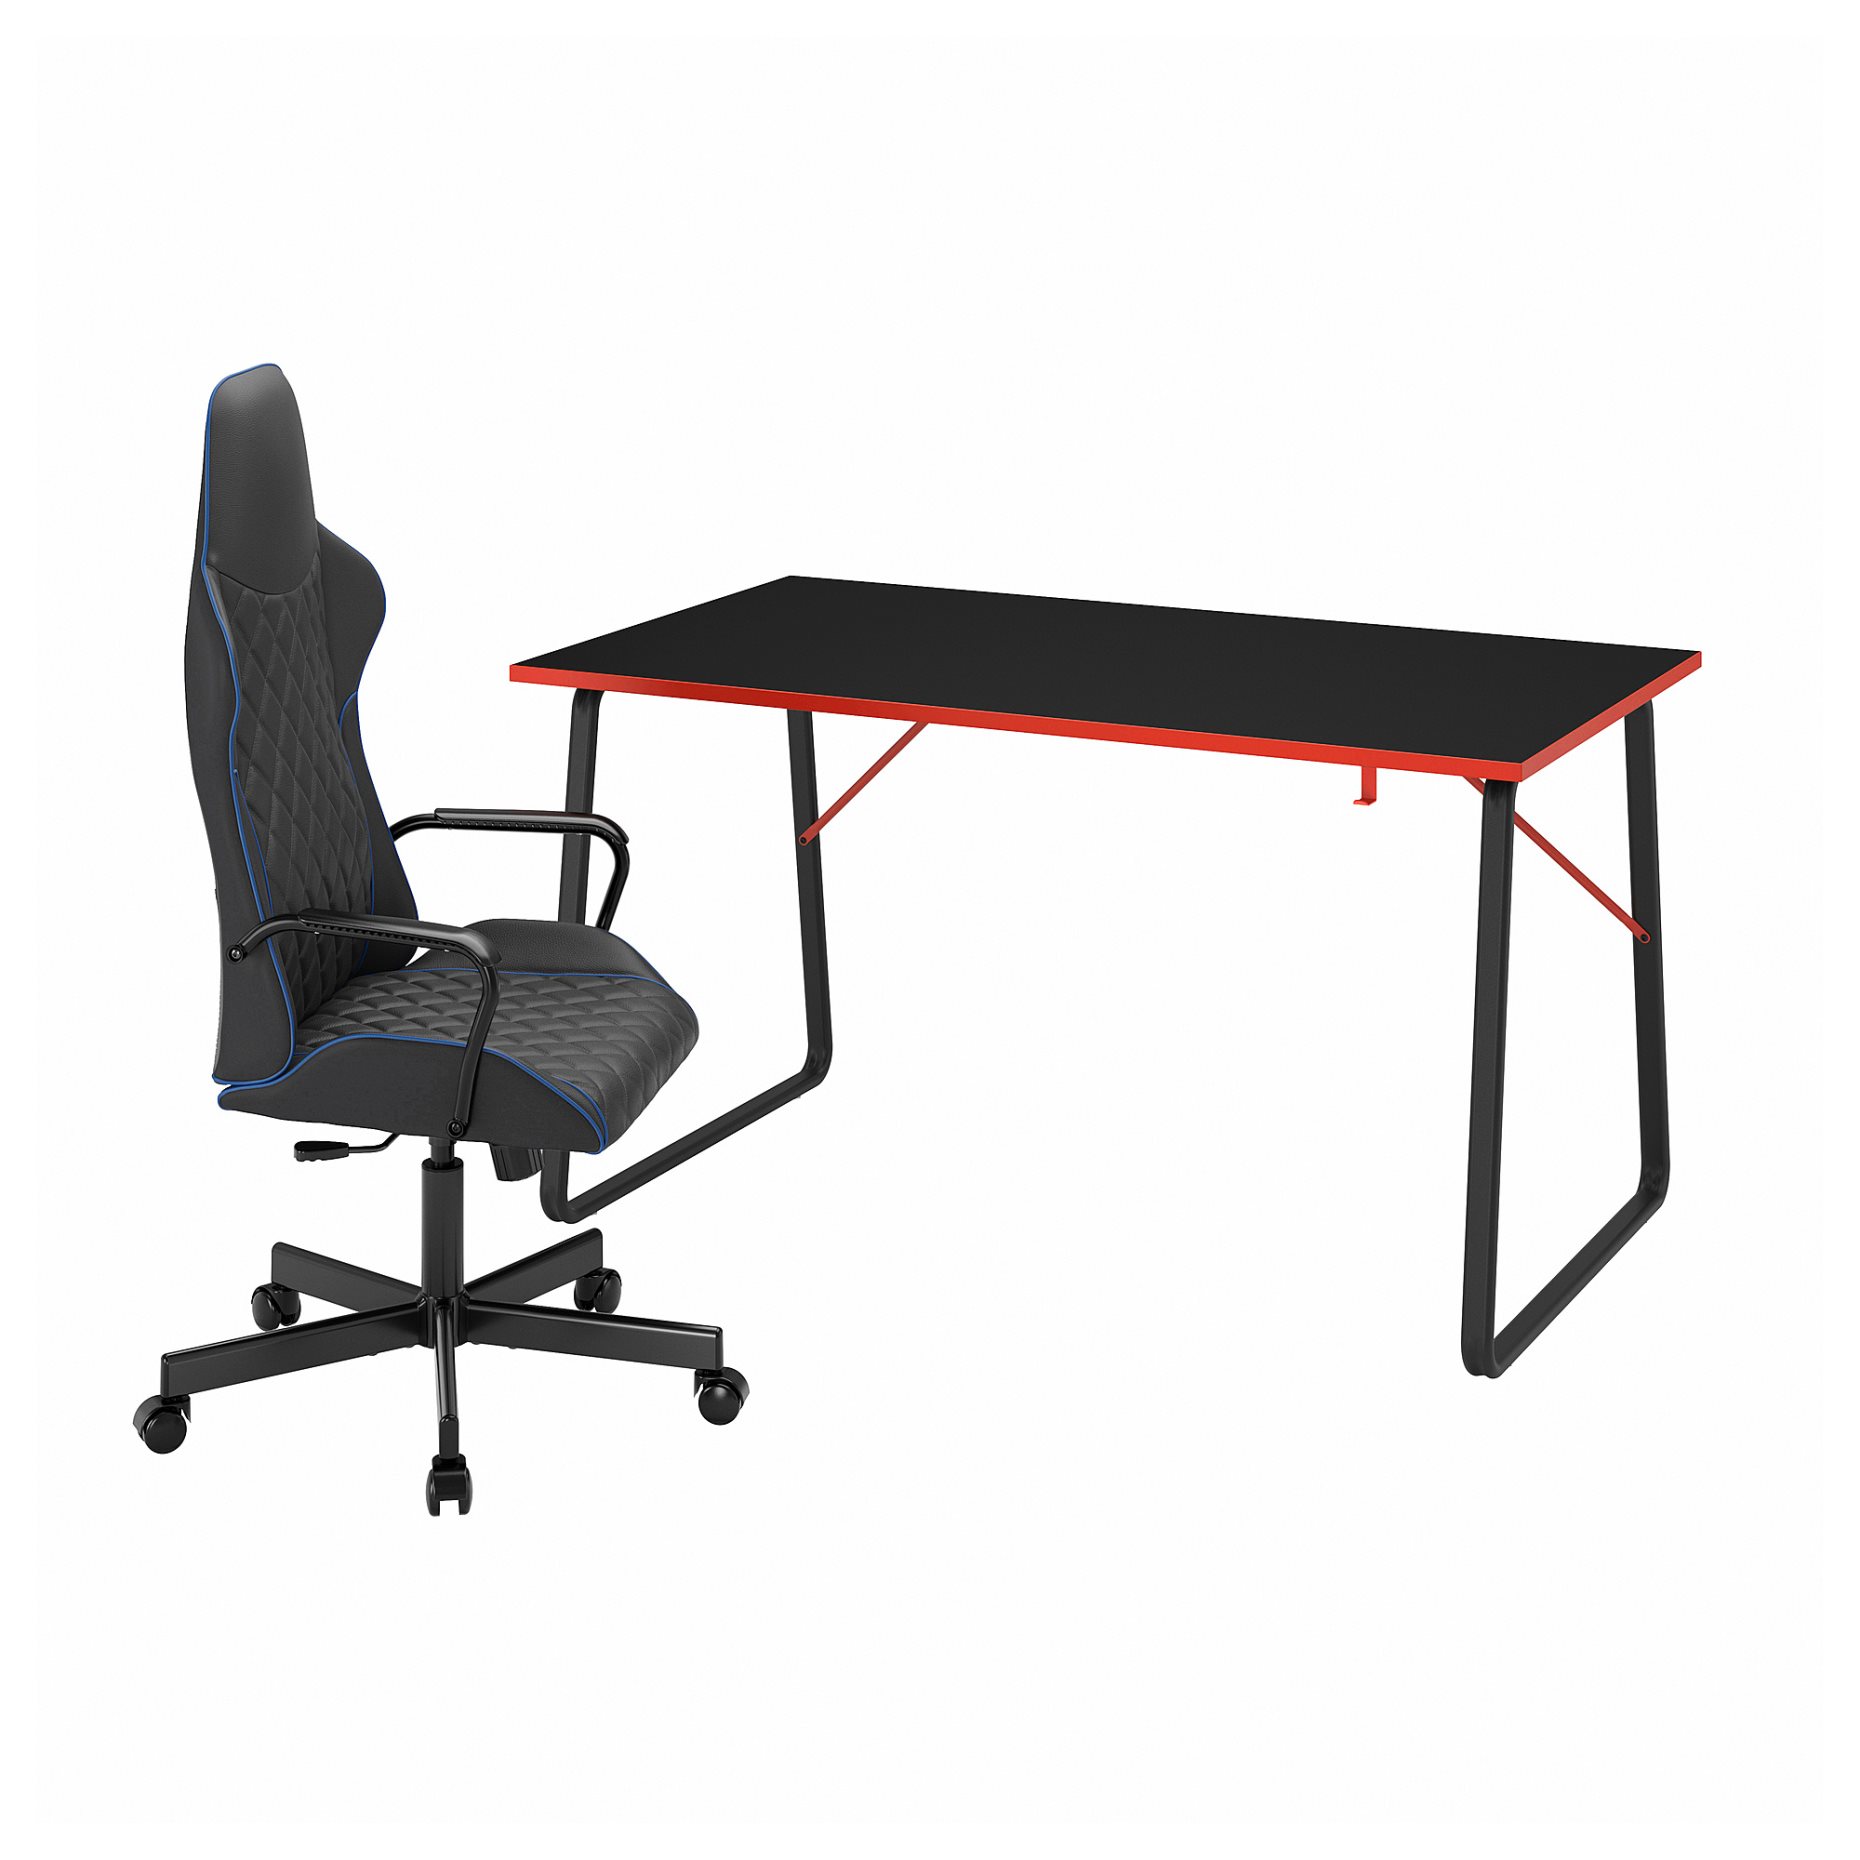 HUVUDSPELARE/UTESPELARE, gaming desk and chair, 394.909.55